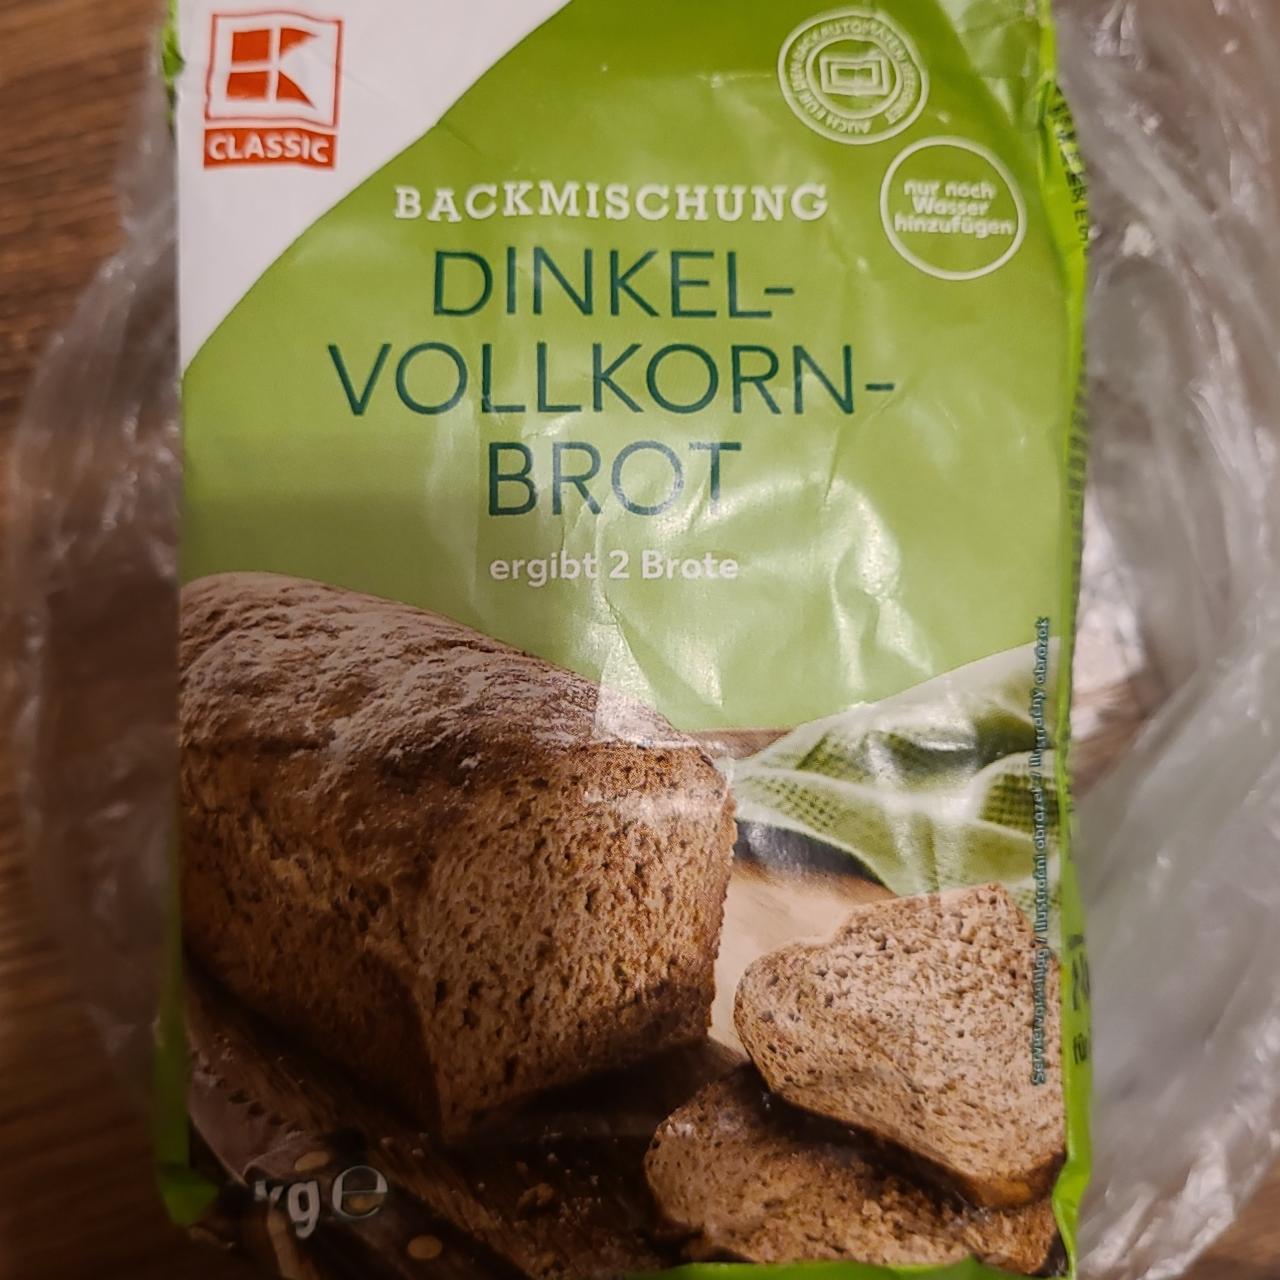 Fotografie - Dinkel-Vollkorn-Brot Backmischung K-Classic